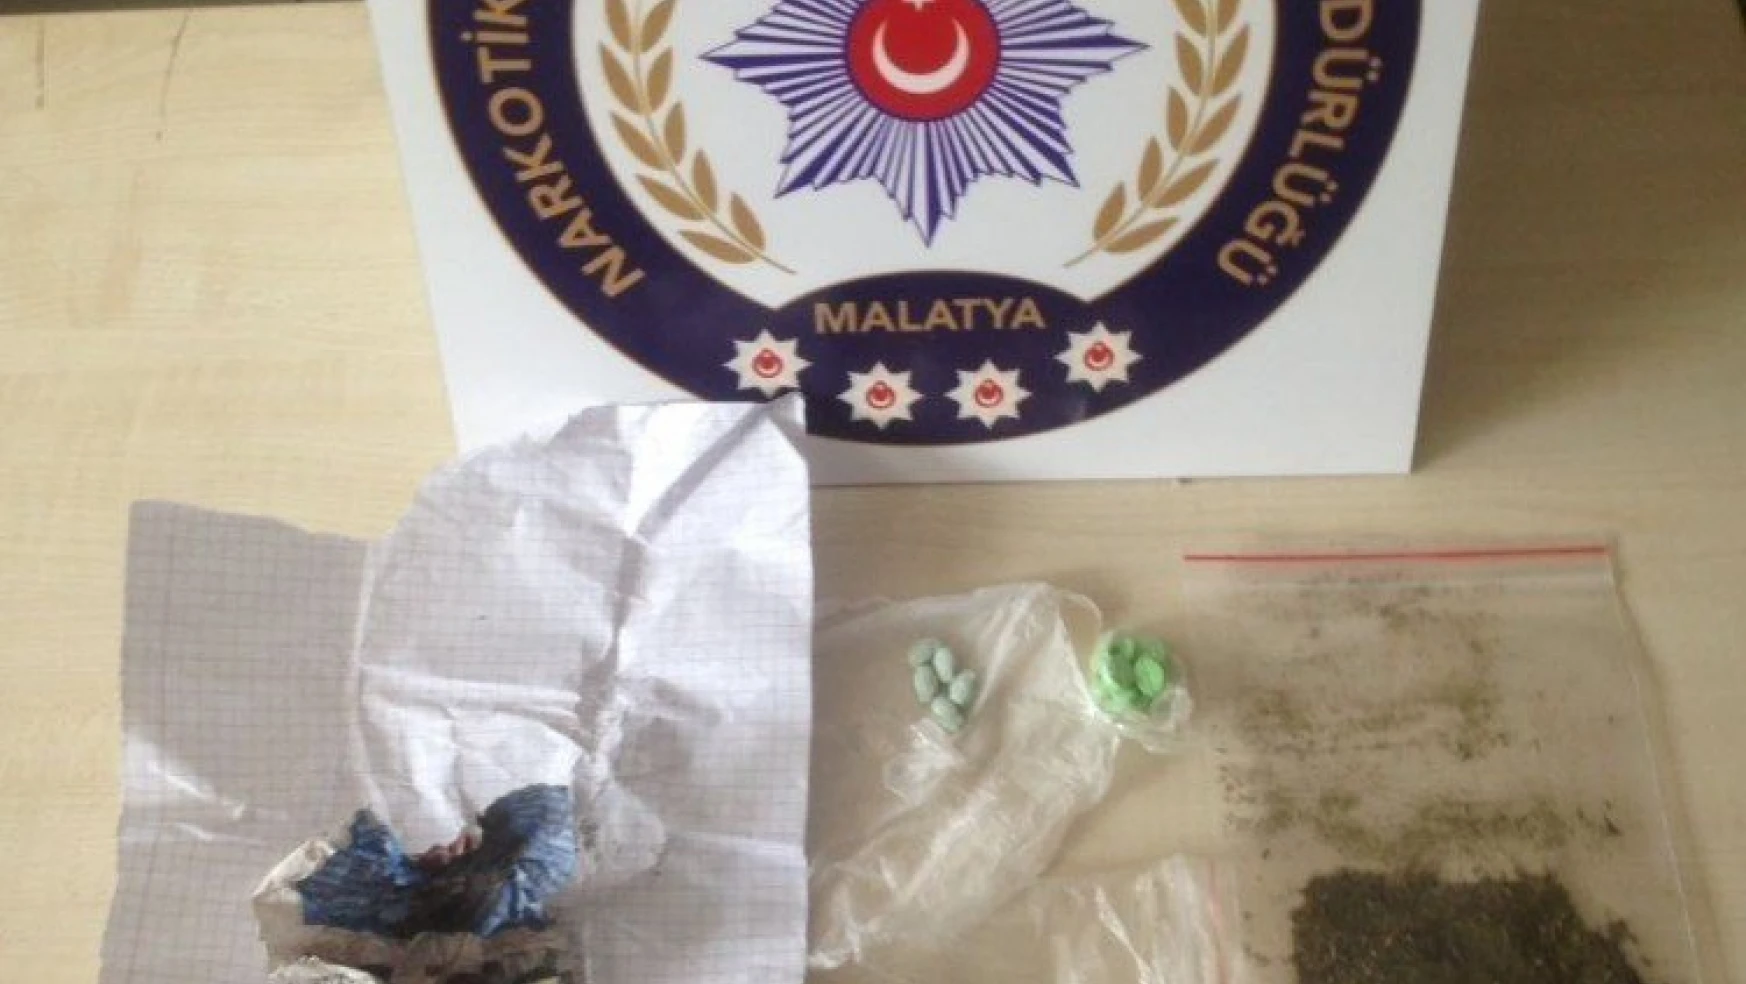 Malatya polisi uyuşturucu tacirlerine bayramda da göz açtırmadı
